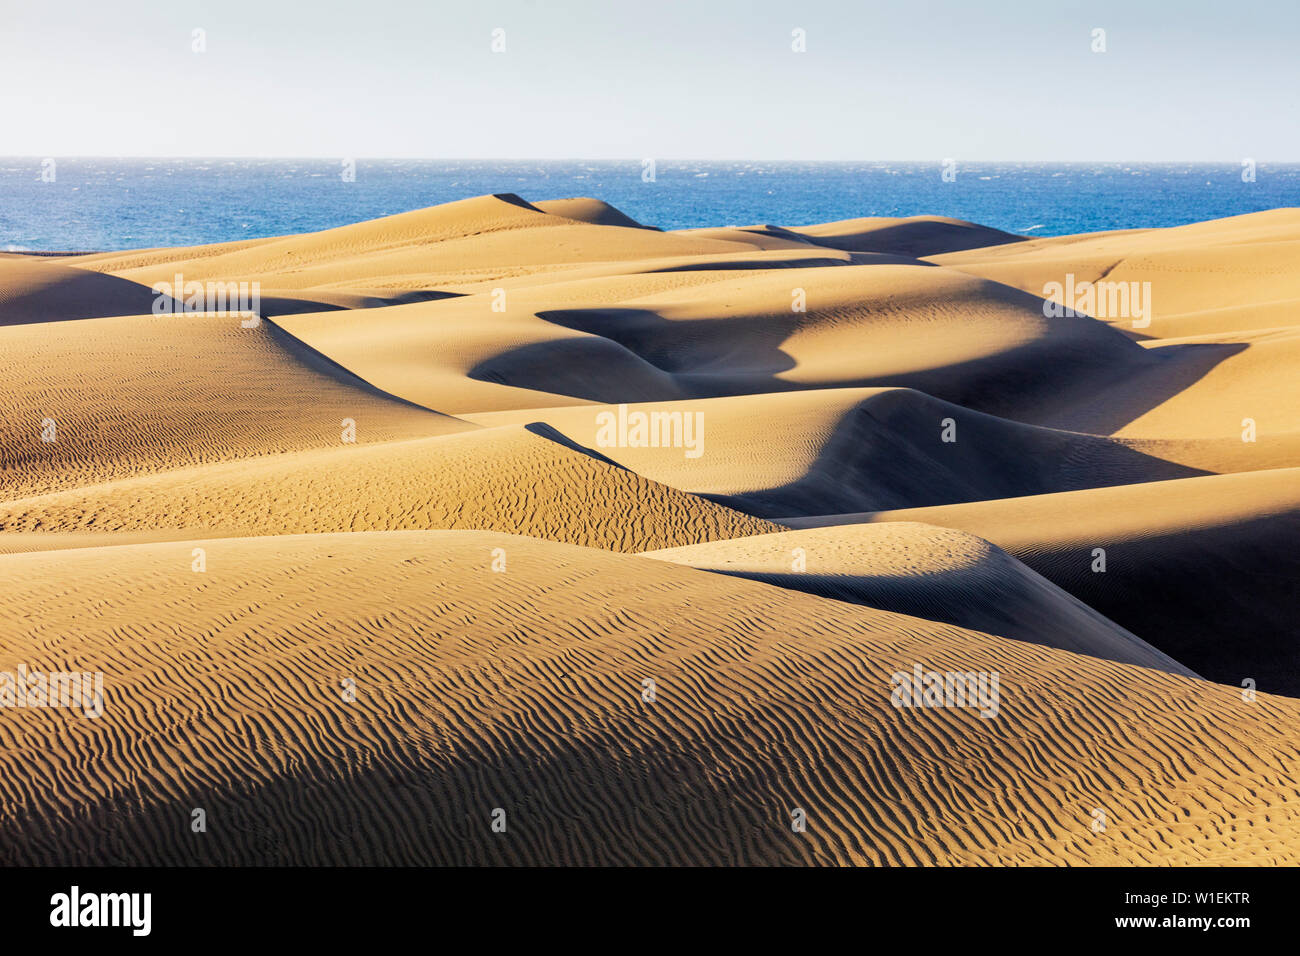 Reserva Natural de las dunas de Maspalomas, Gran Canaria, Islas Canarias, Atlántico, Europa Foto de stock